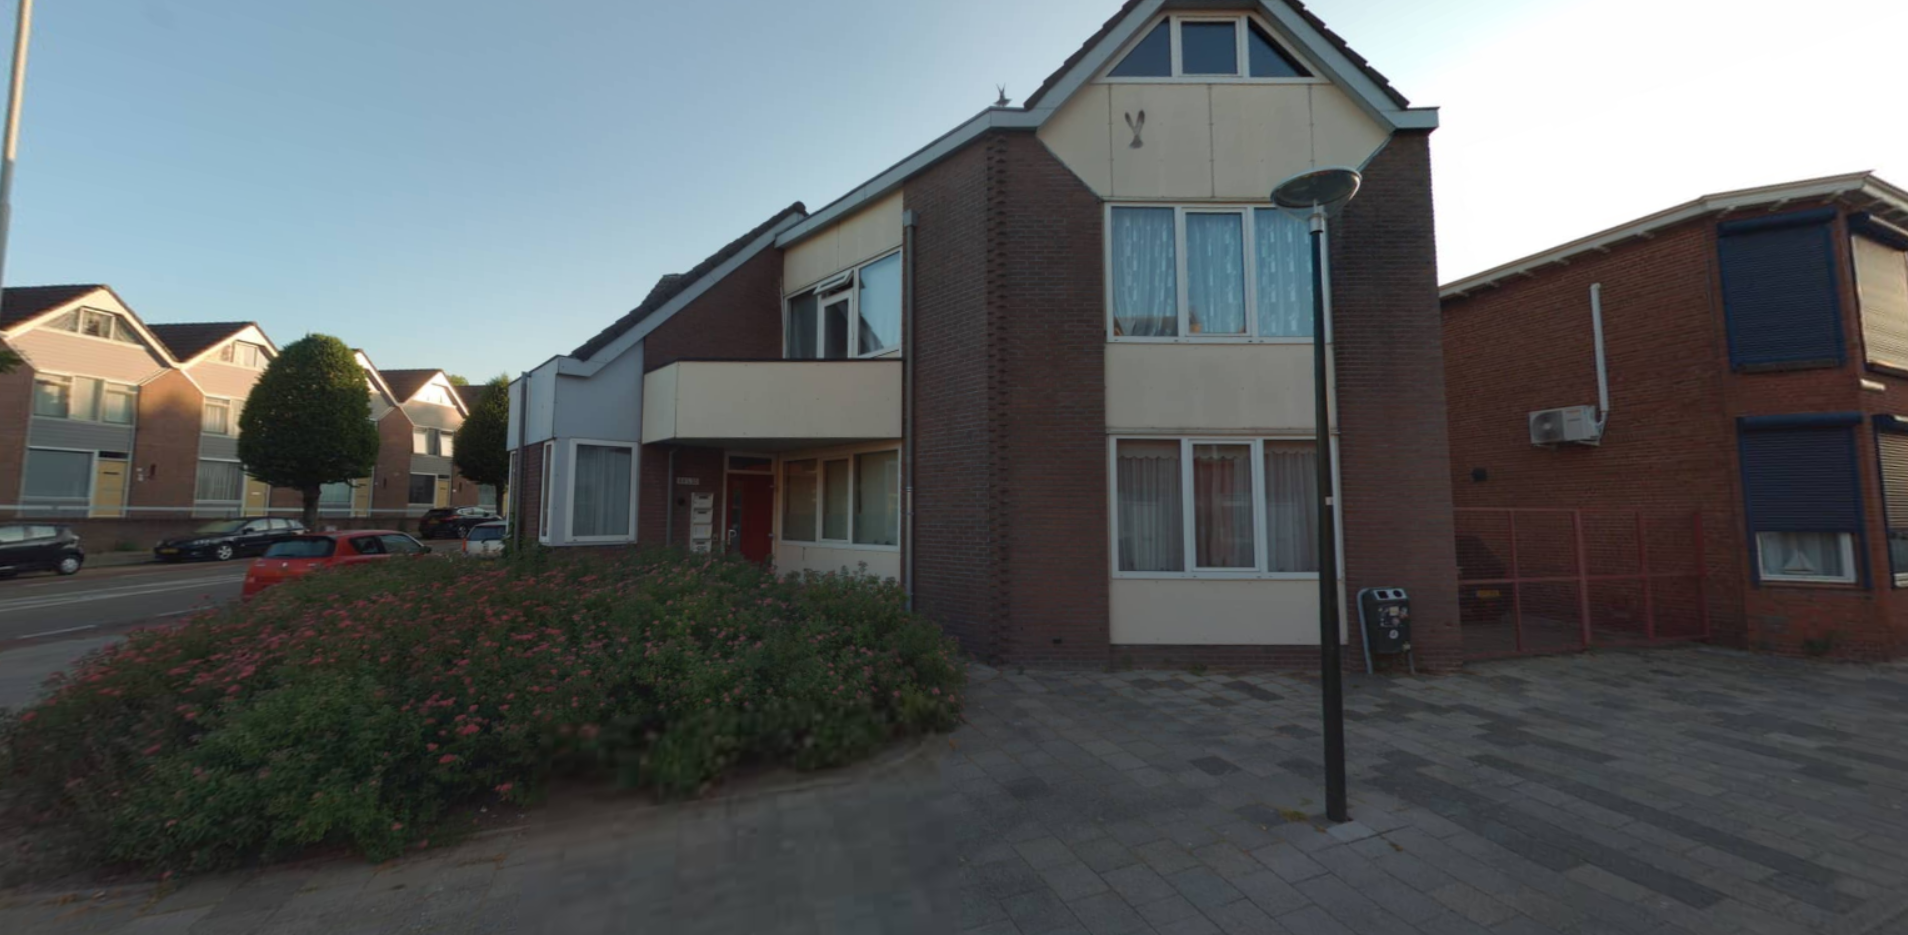 Moeregrebstraat 46, 4611 JD Bergen op Zoom, Nederland